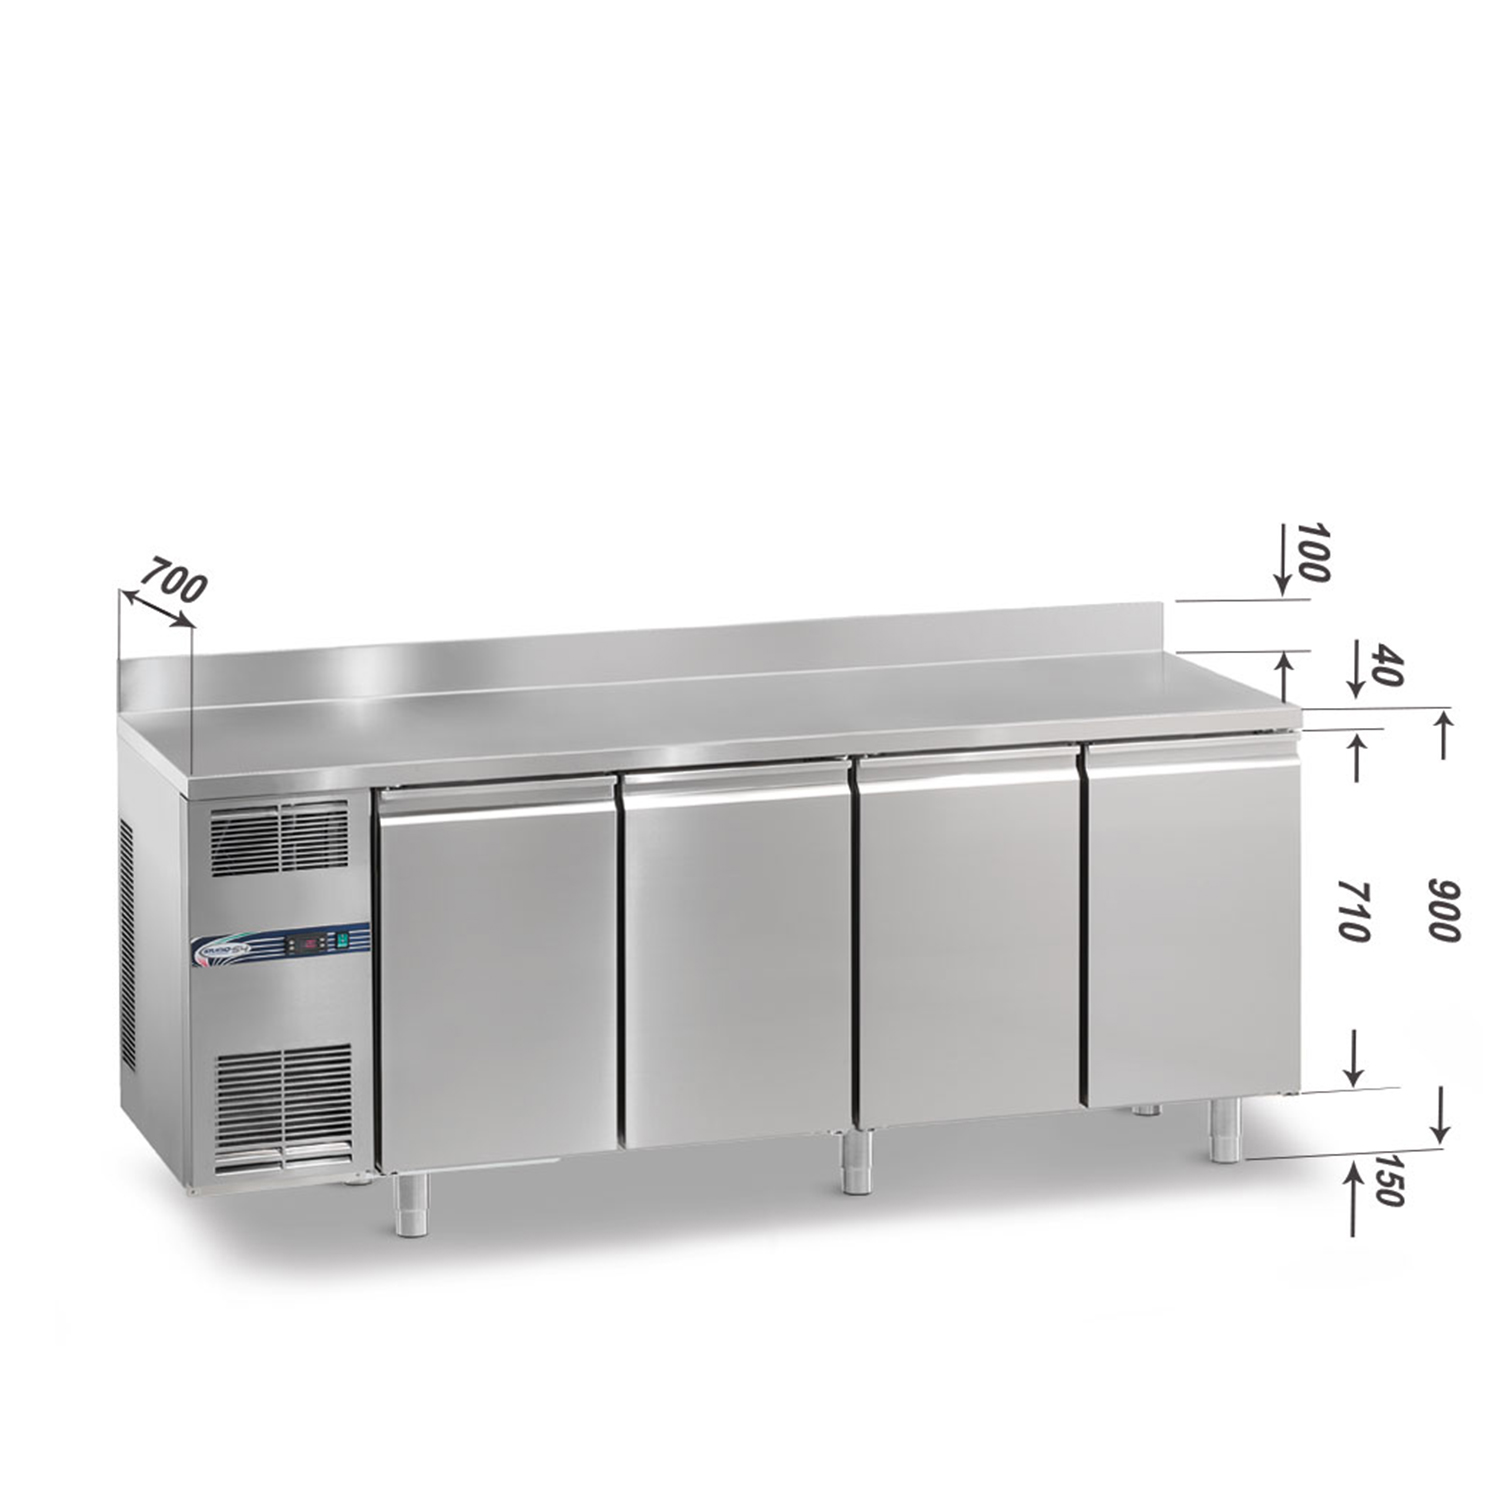 Tiefkühltisch DAIQUIRI Top Line H710 GN 1/1, B 2200  x T 700 x H 900+100 mm, 4 Kühlfächer, Arbeitsplatte mit Aufkantung